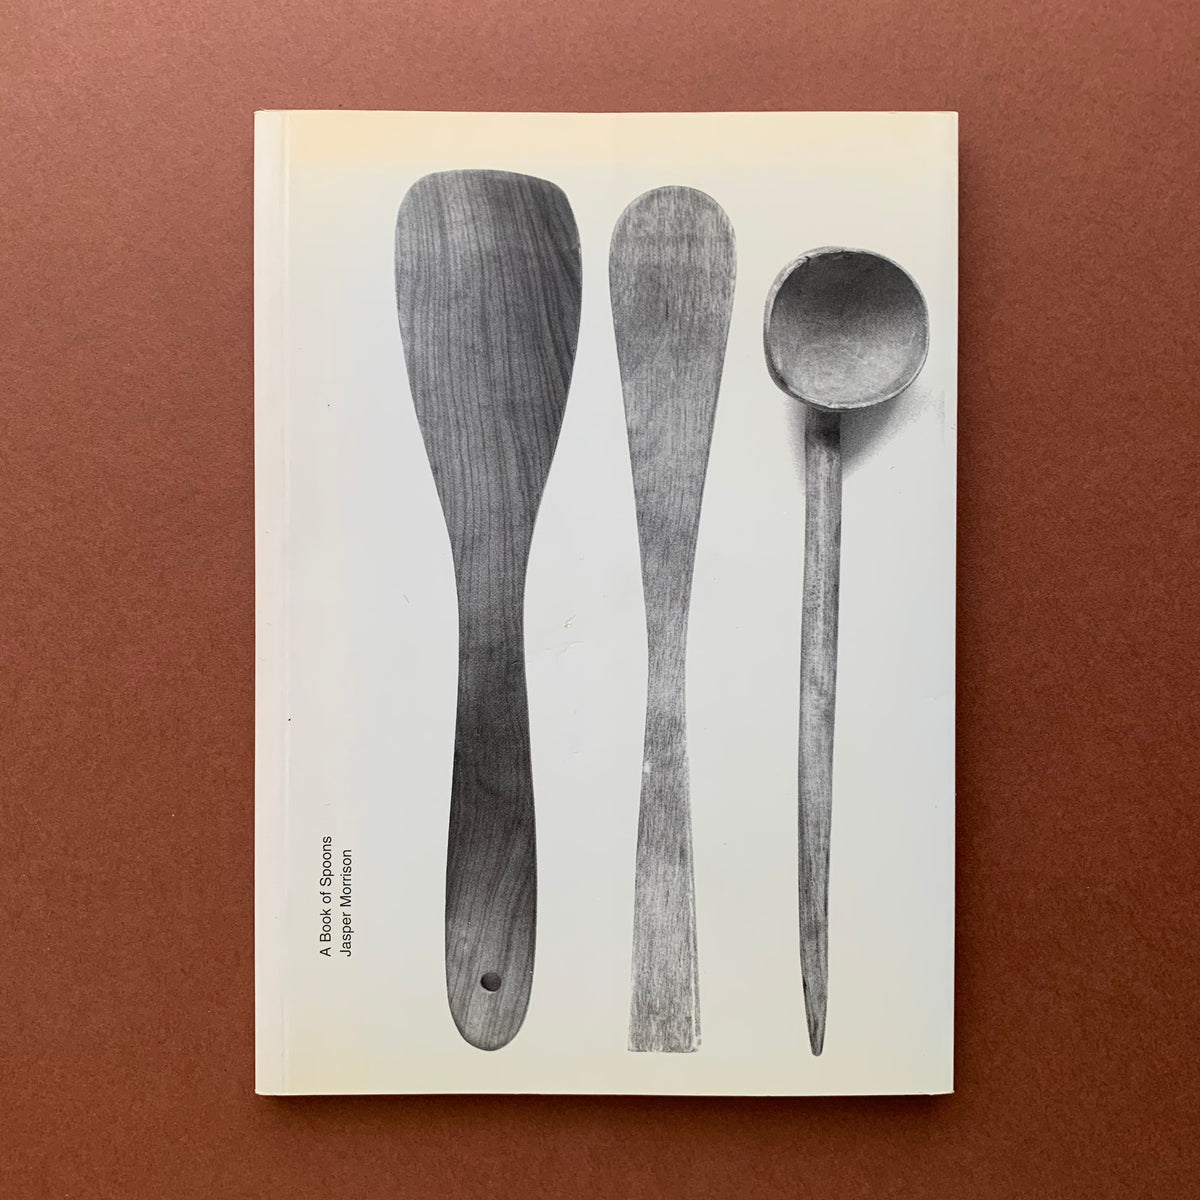 ジャスパー・モリソン【A Book of Spoons】アートブック 希少 - 本 